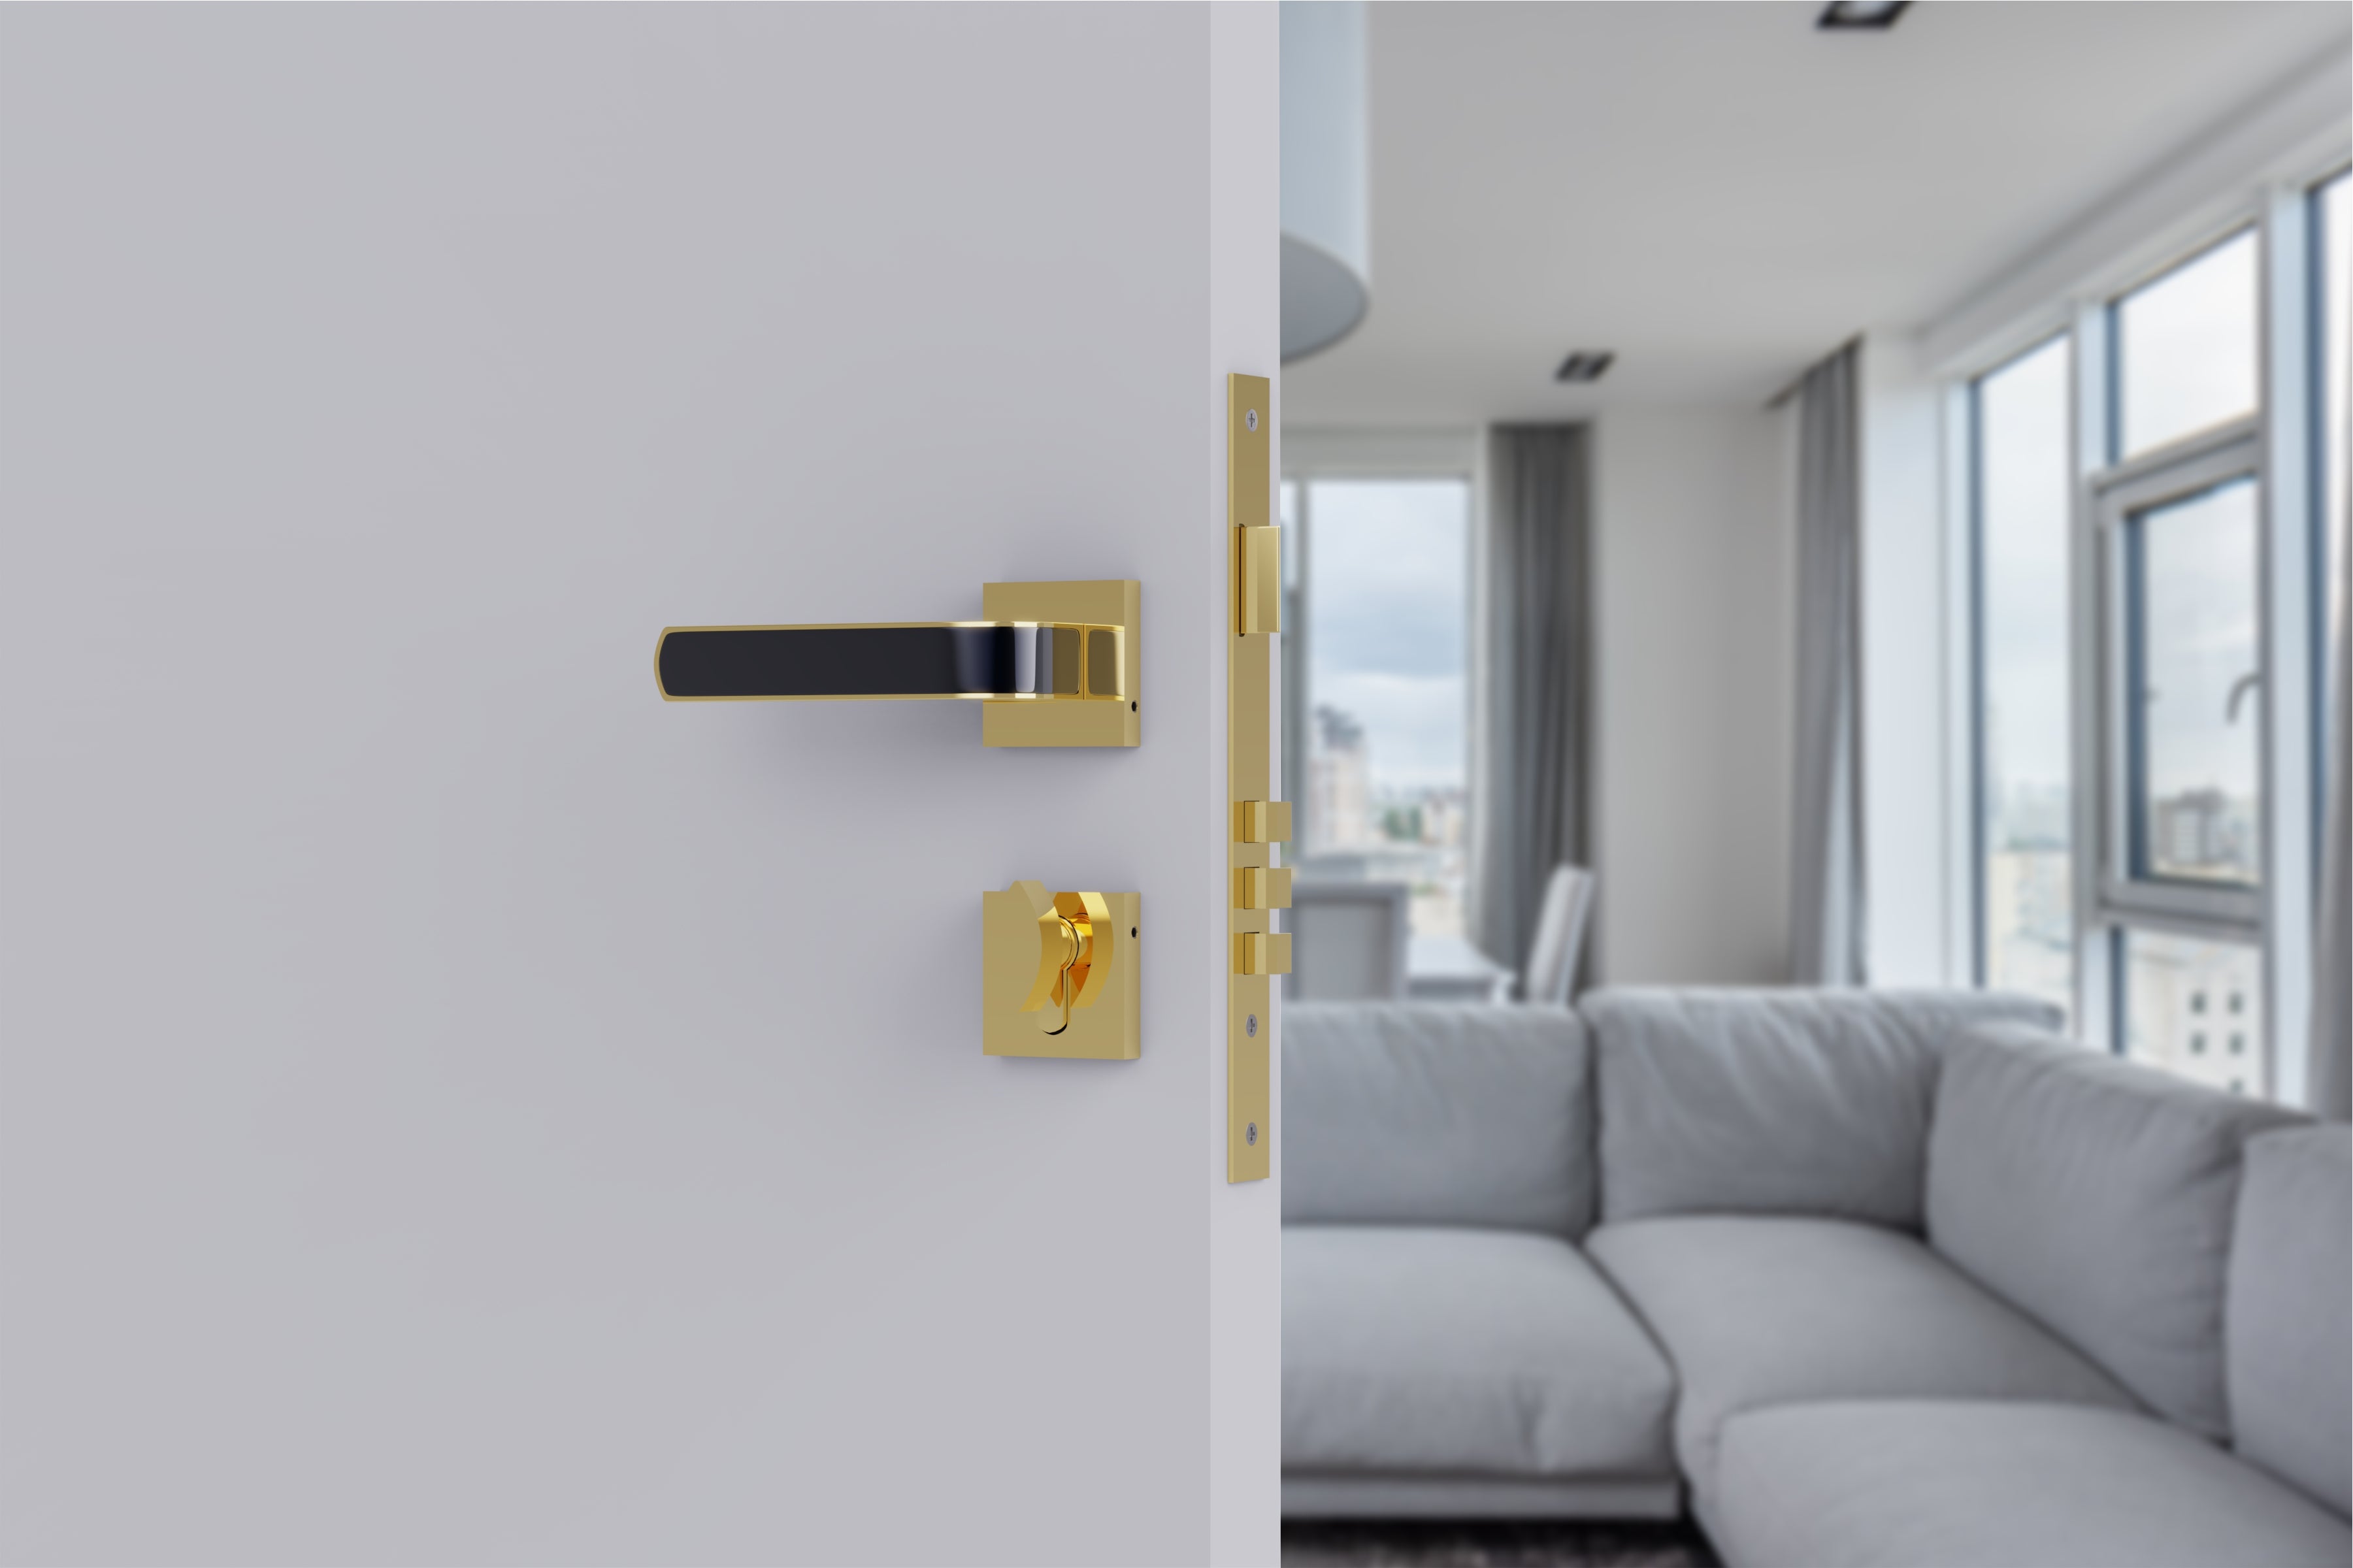 Superior Heavy Duty Mortise Door Locks for Main Door Lock Handles Set Home, Office, Hotel, Bedroom